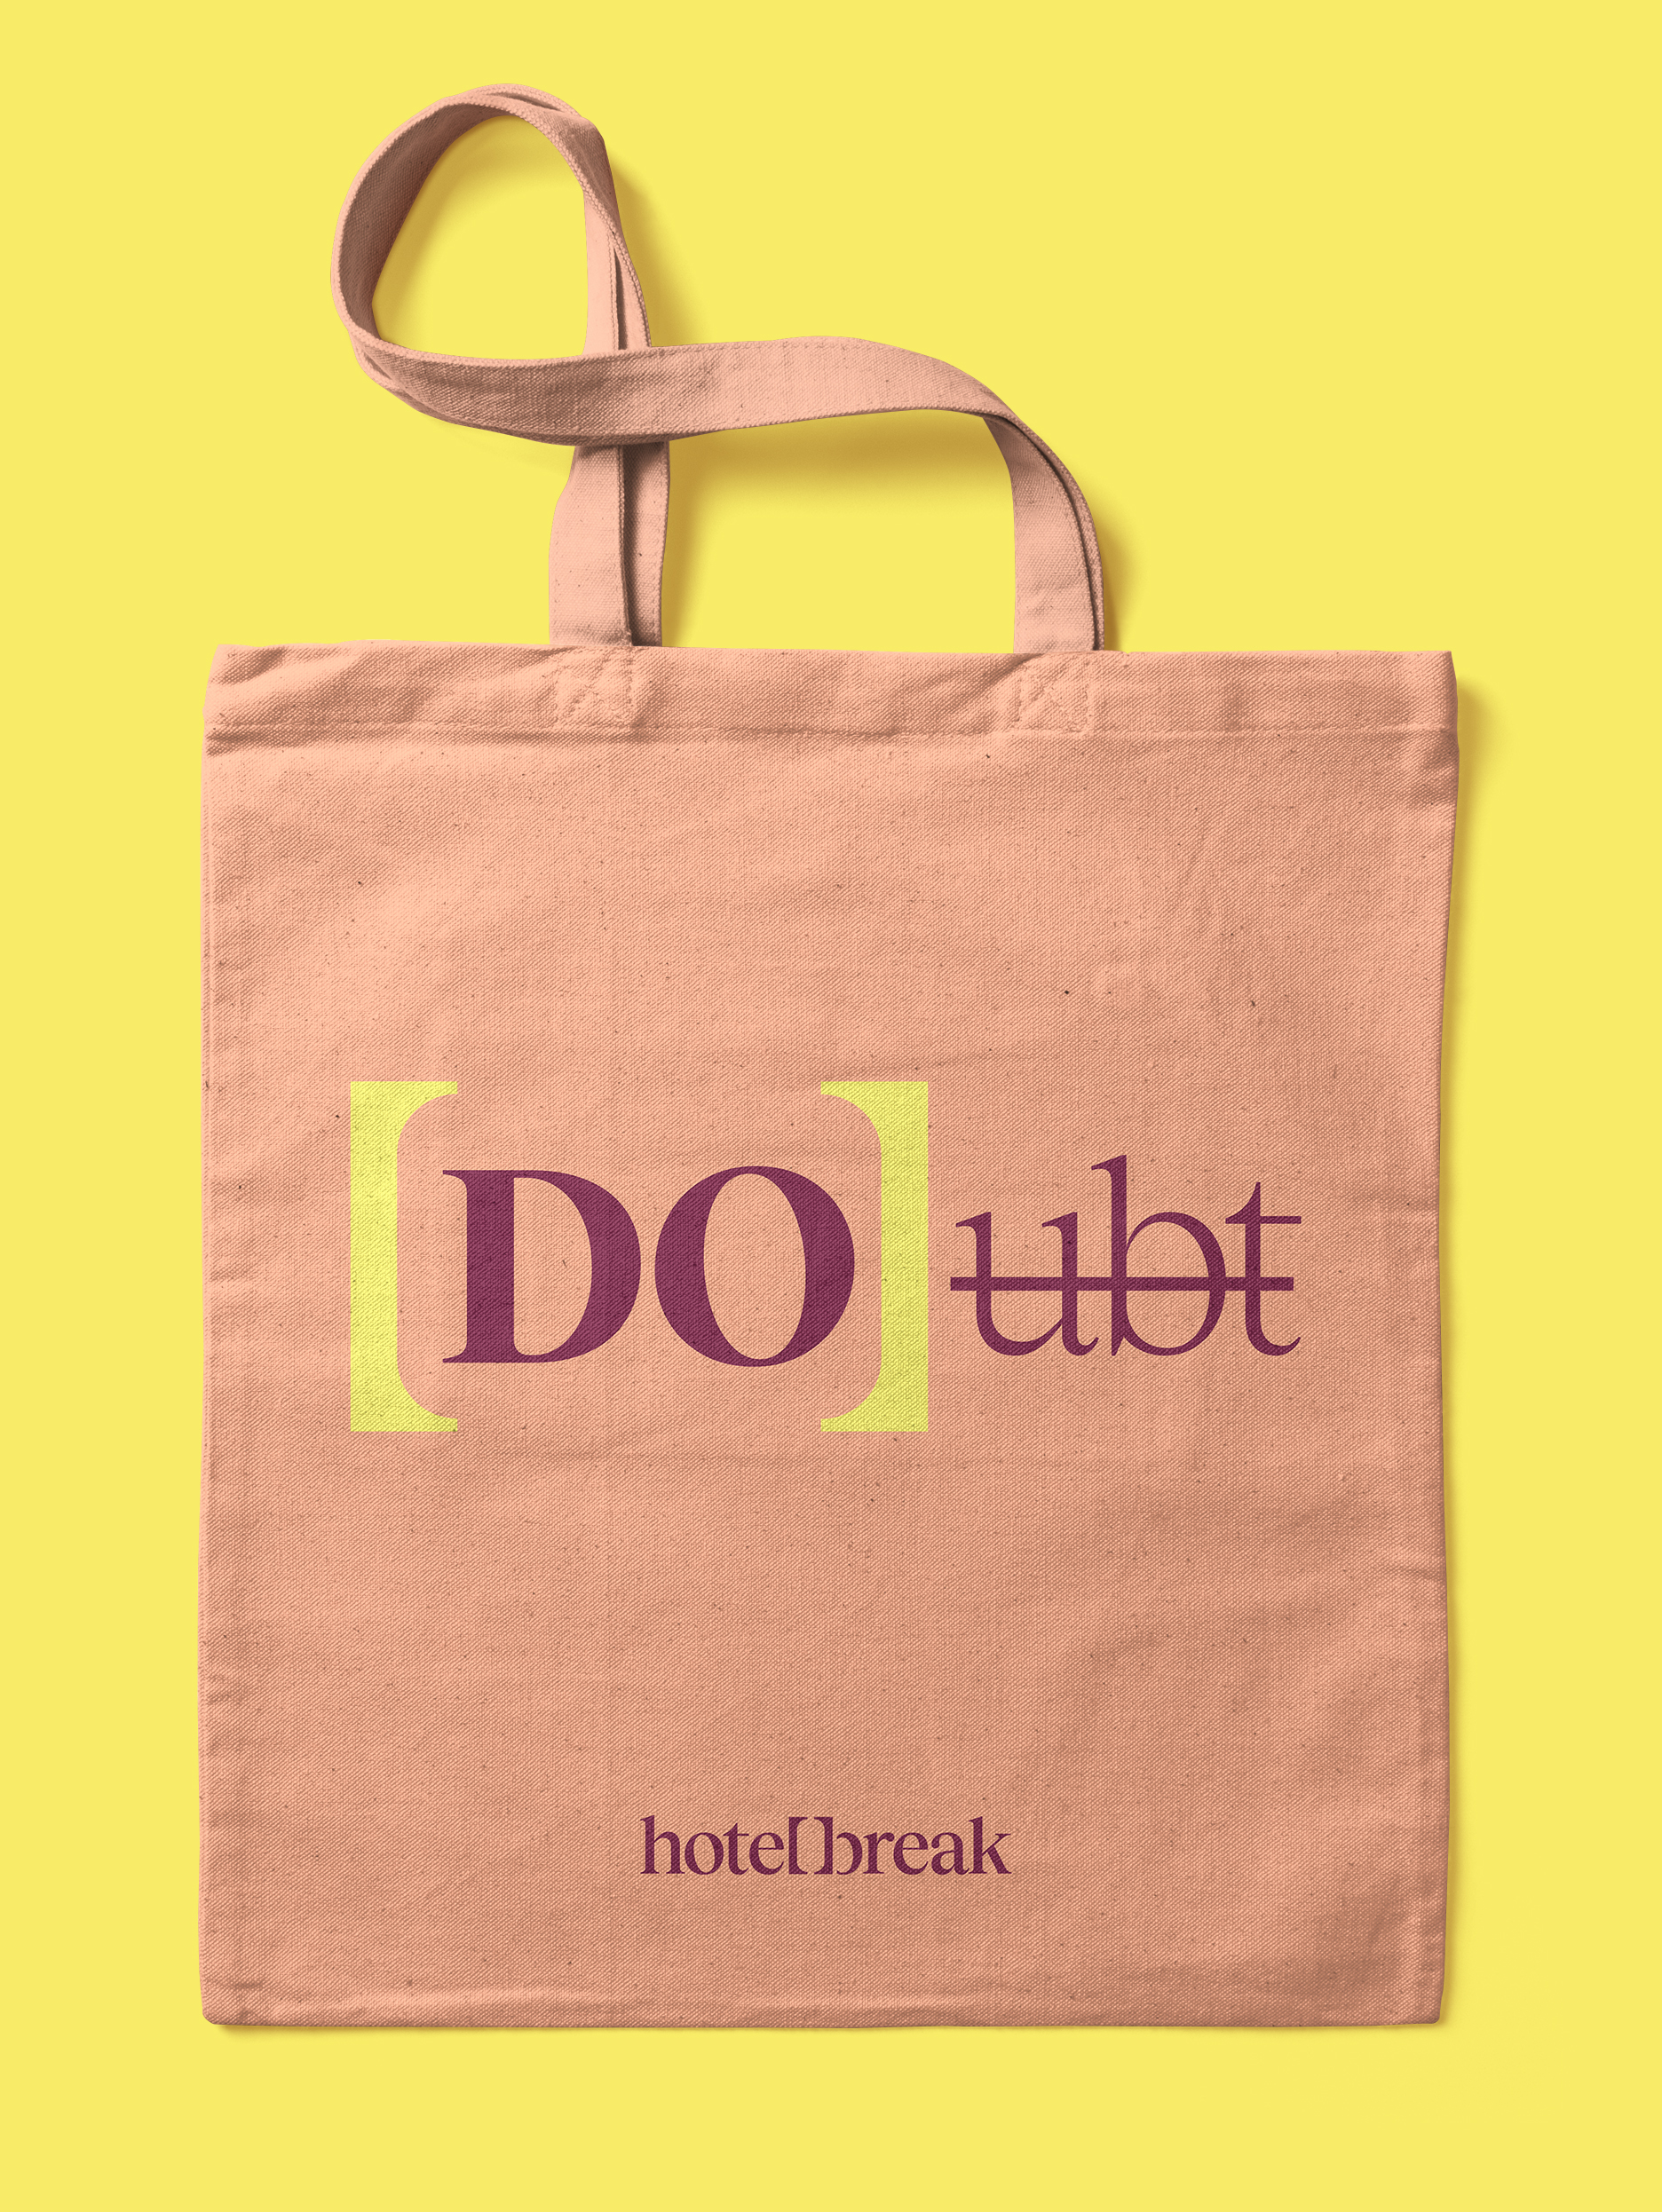 Diseño de tote bag para Hotelbreak